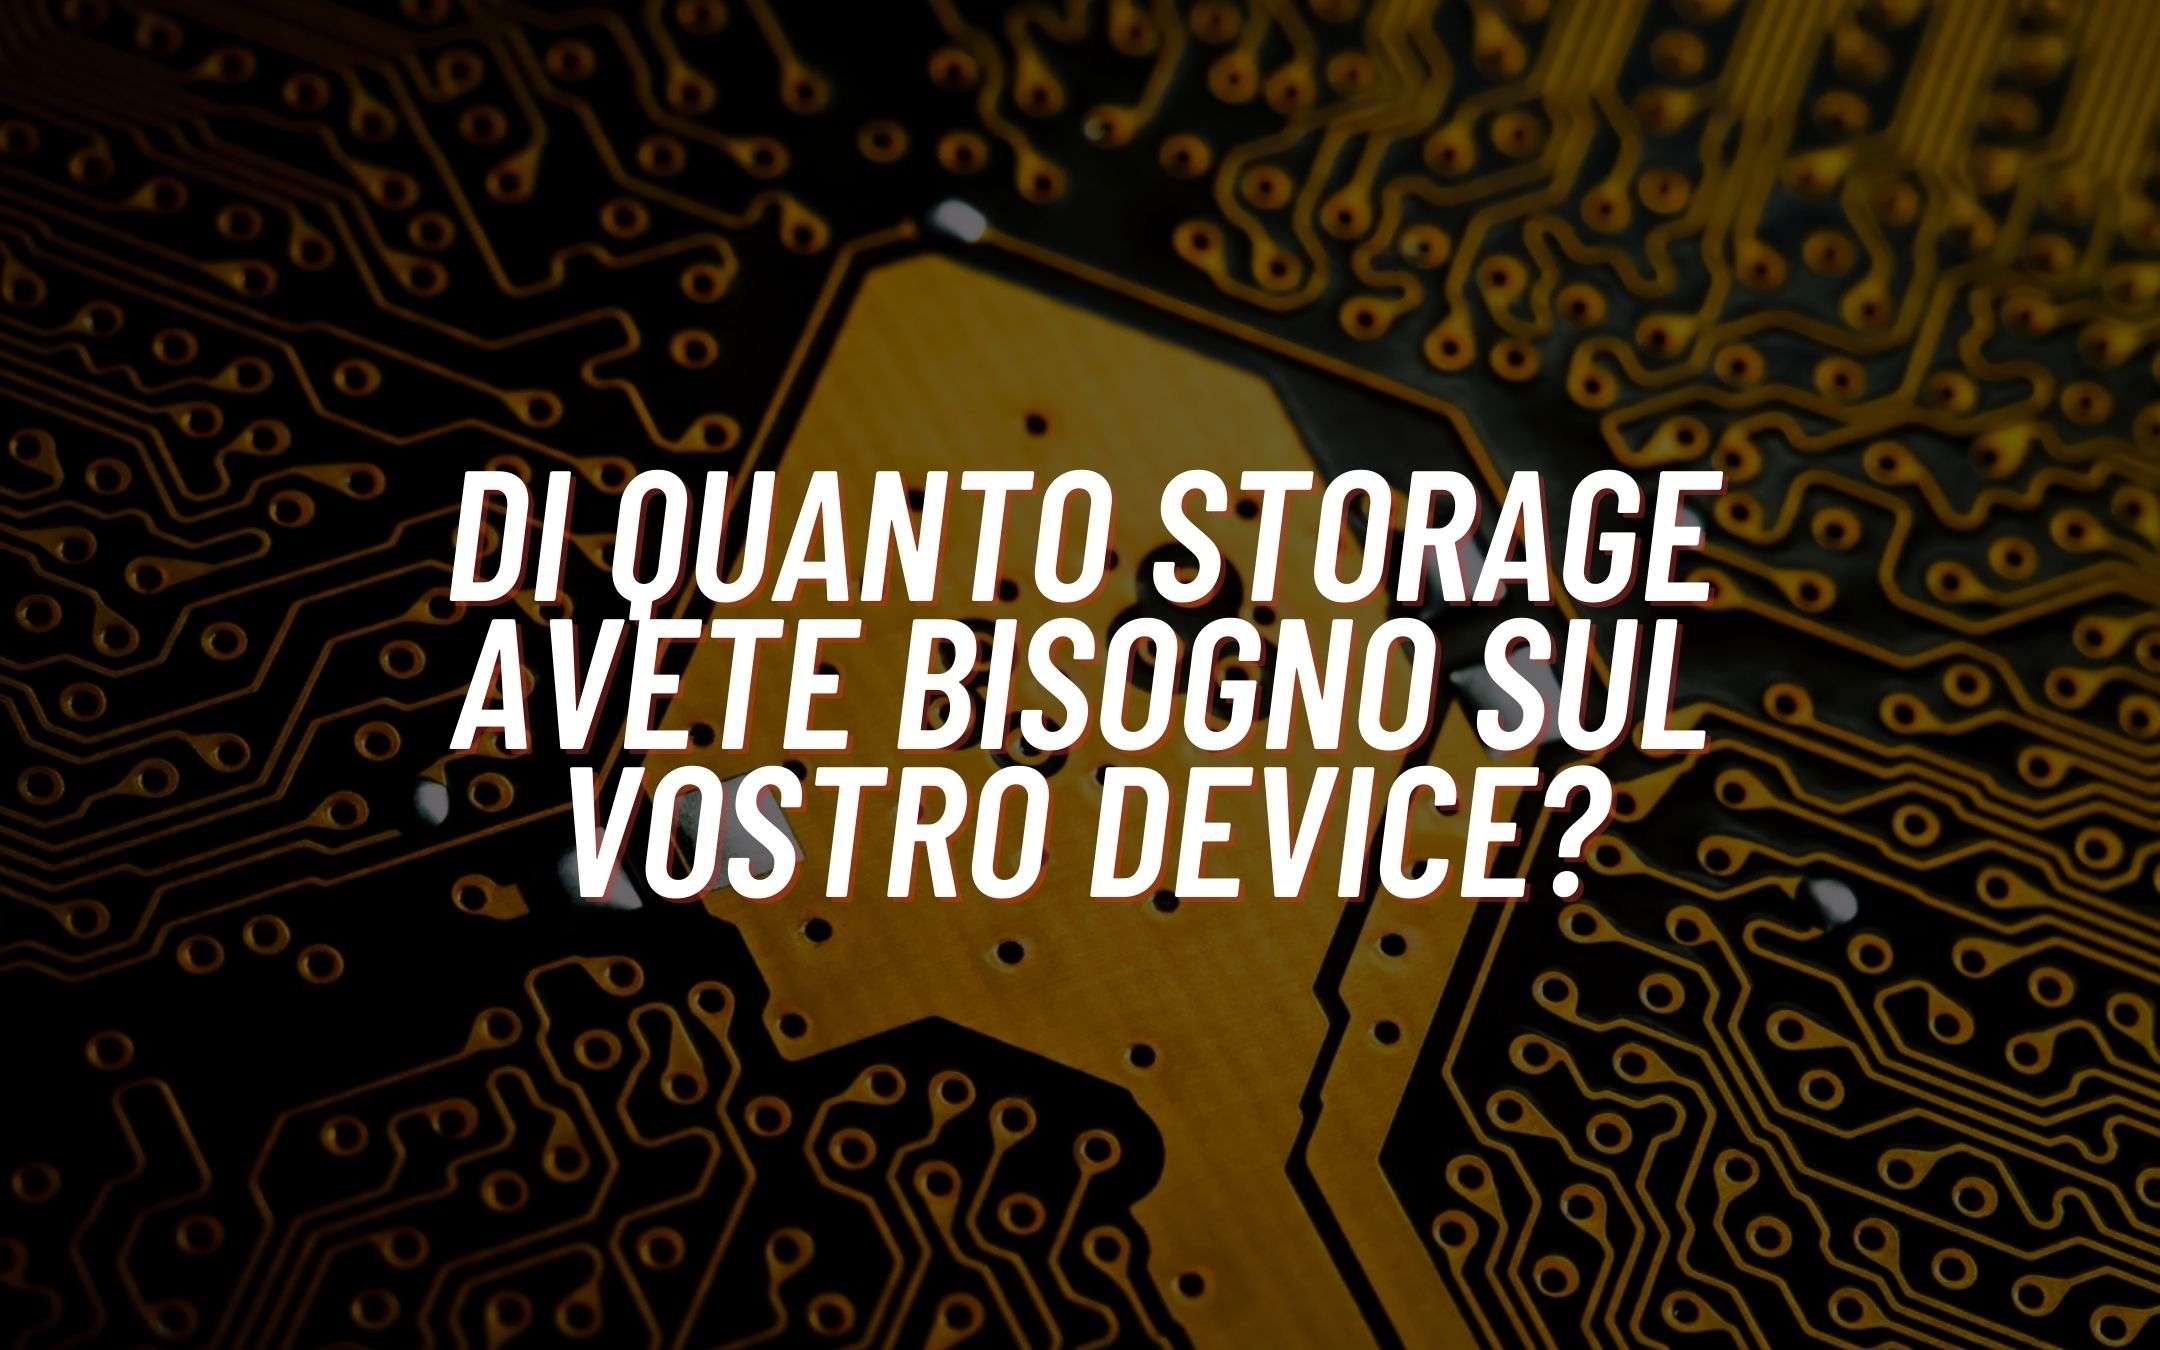 Di quanto storage avete bisogno nel vostro device?